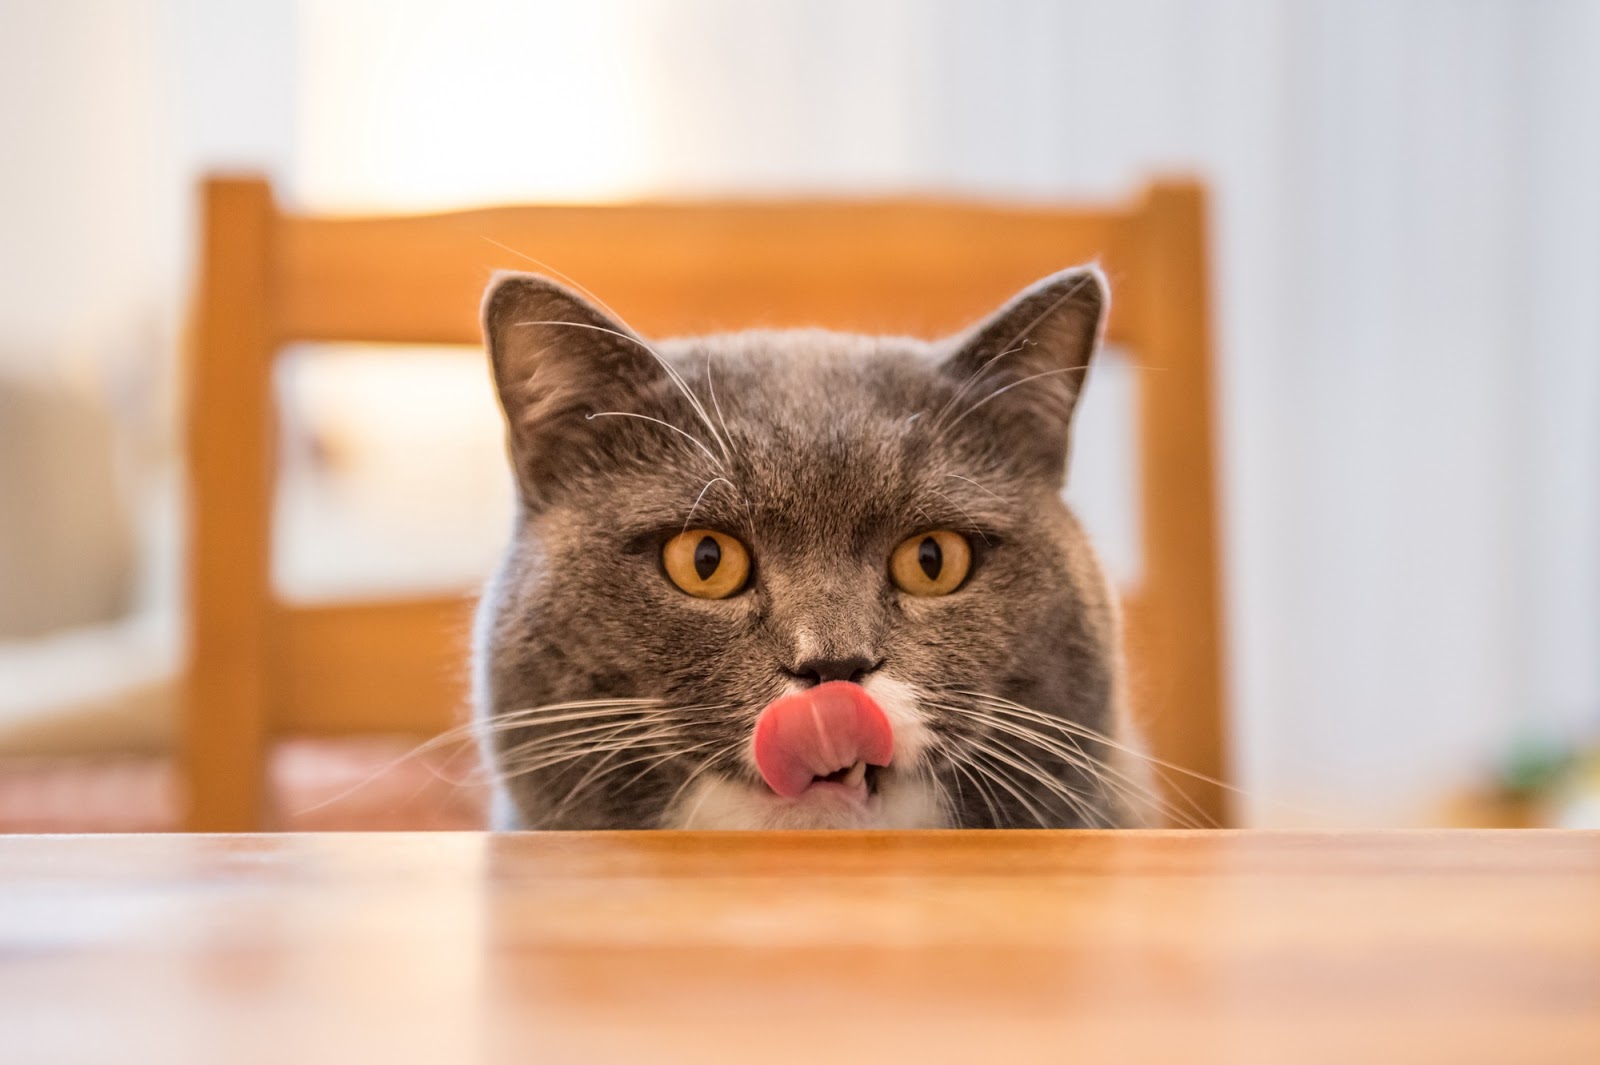 Your cat loves tasty treats